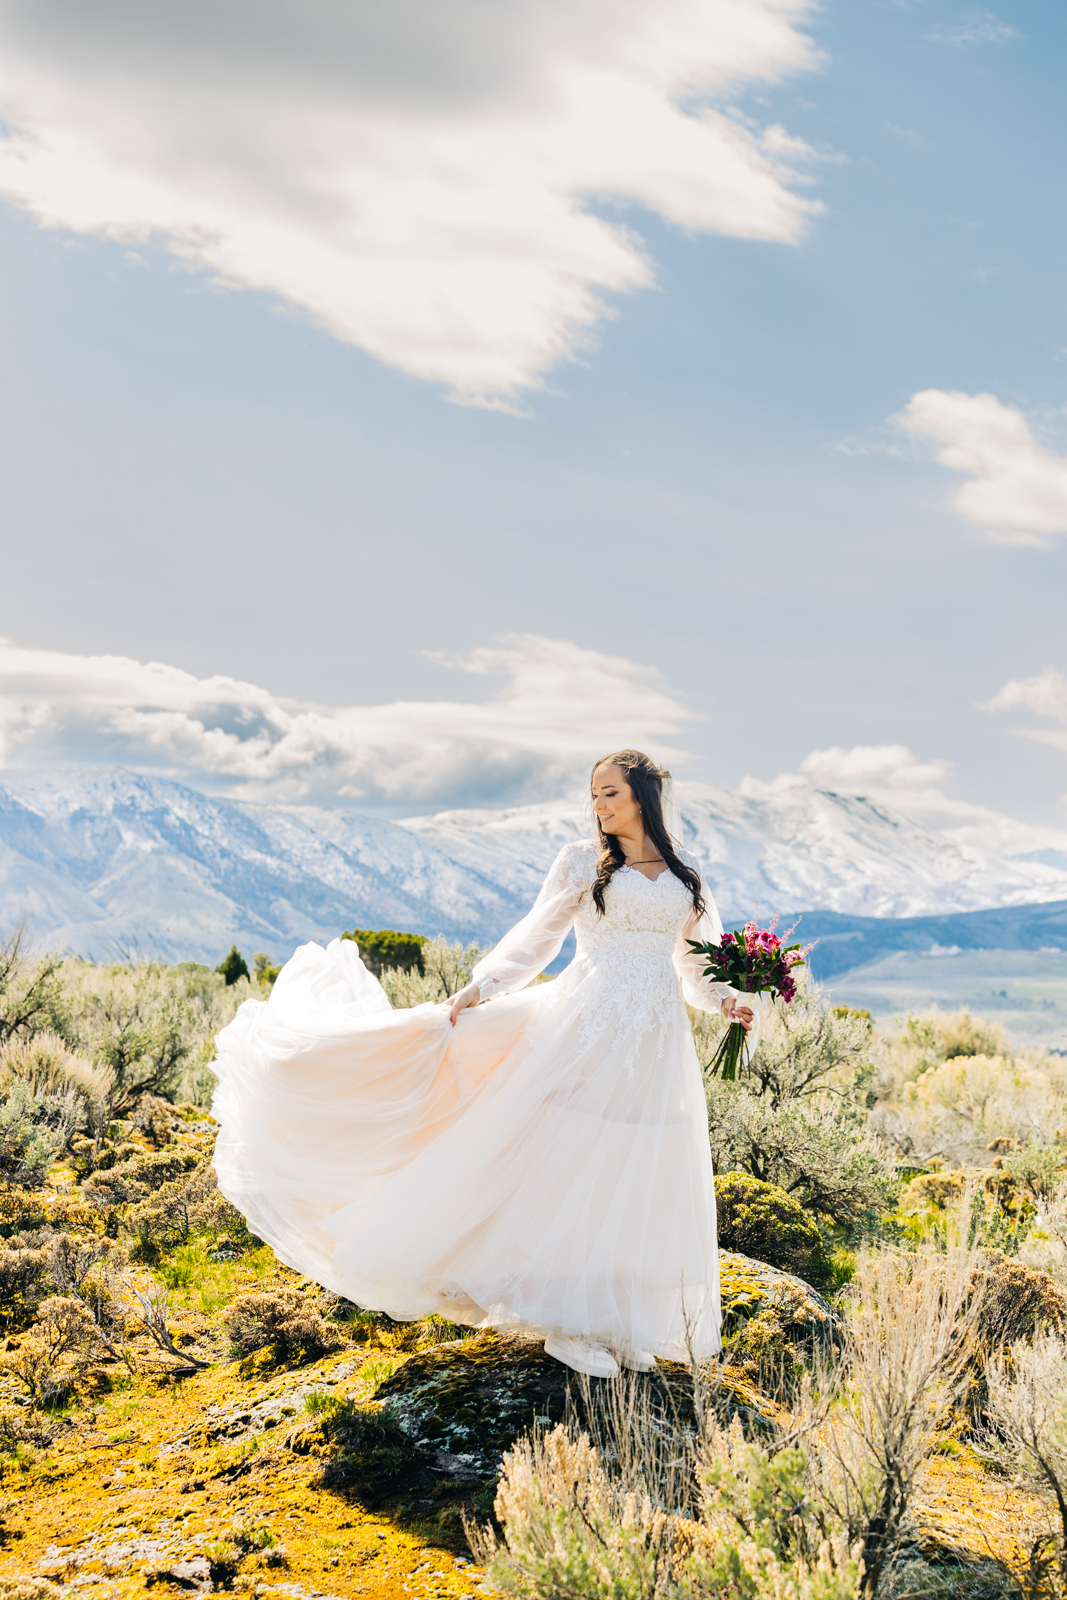 Jackson Hole wedding photographer captures bride swooshing dress